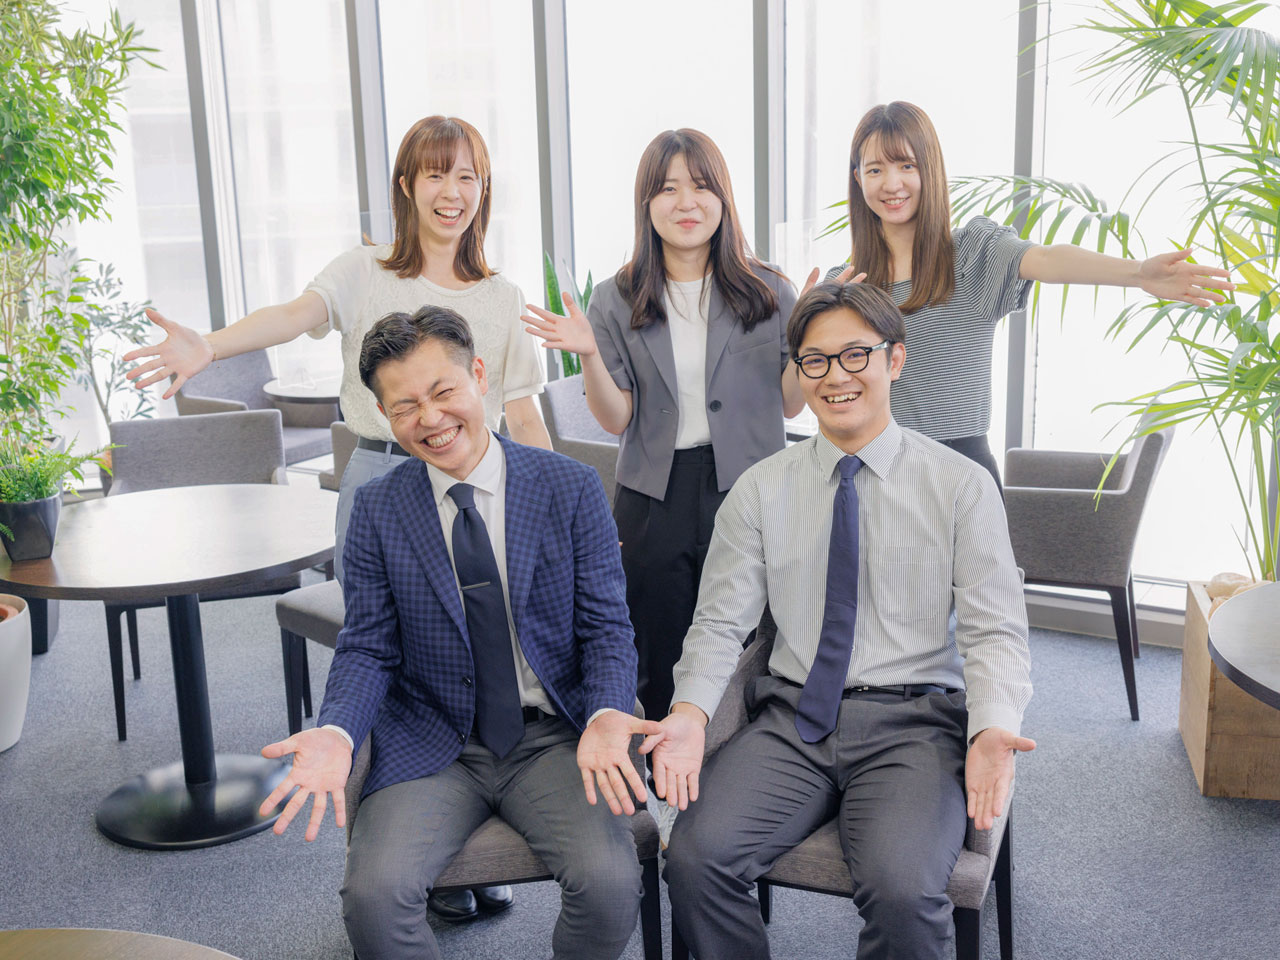 同社は東京、大阪、愛知、福岡の主要4都市でレンタル・シェアリングサービスを展開する会社だ。